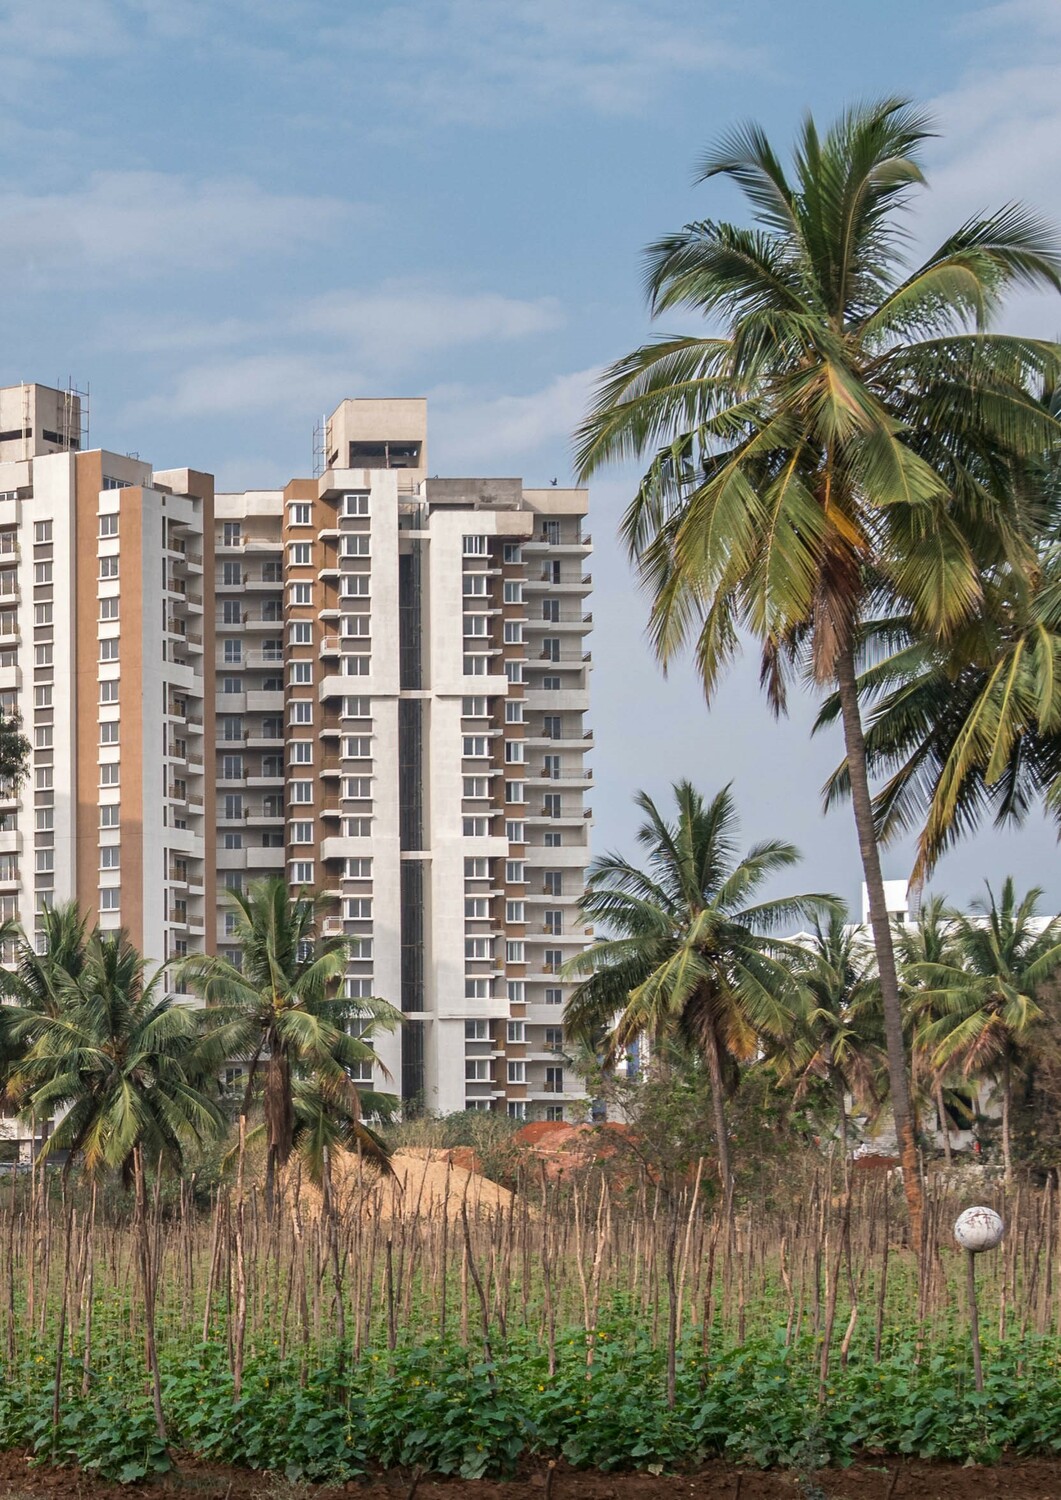 Städtische Landwirtschaft in Bangalore (Indien), wo die Studie durchgeführt wurde: Gemüsefelder neben neu gebauten Hochhäusern.